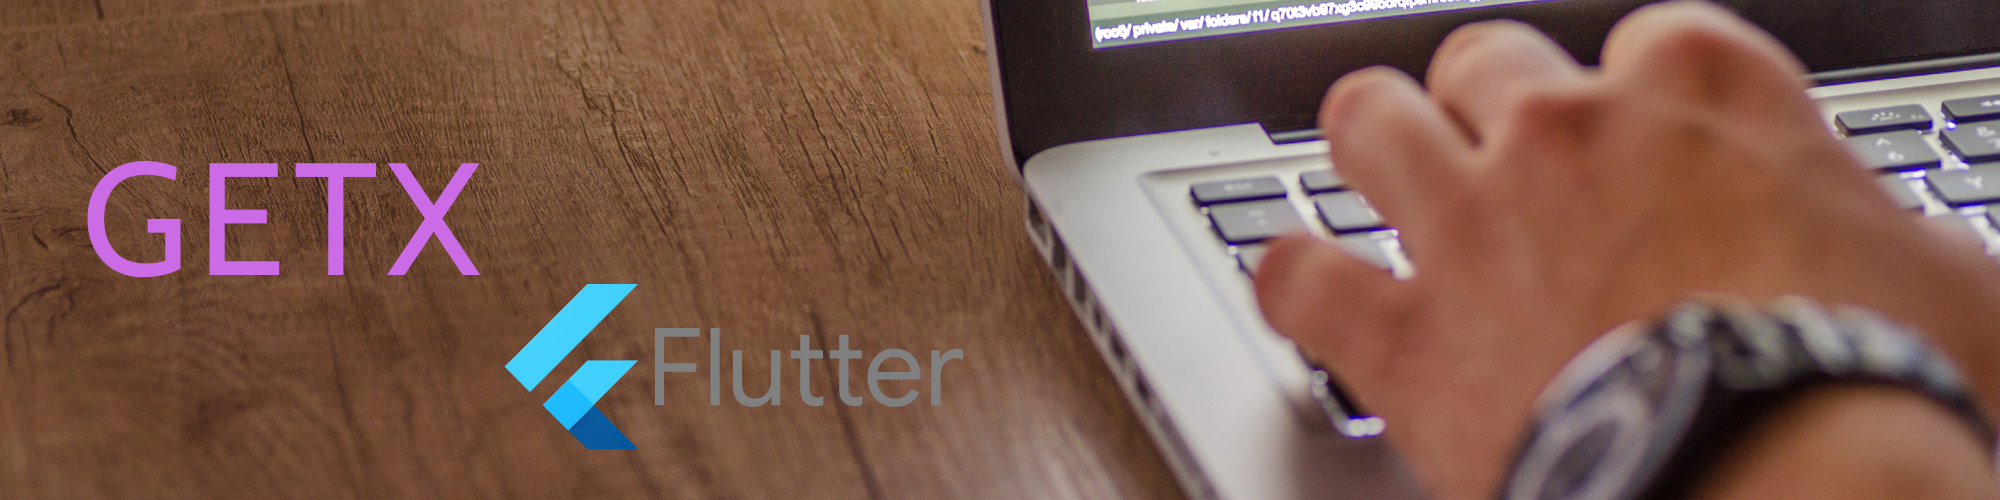 GetX Flutter – Giới thiệu và cài đặt (Phần 1)